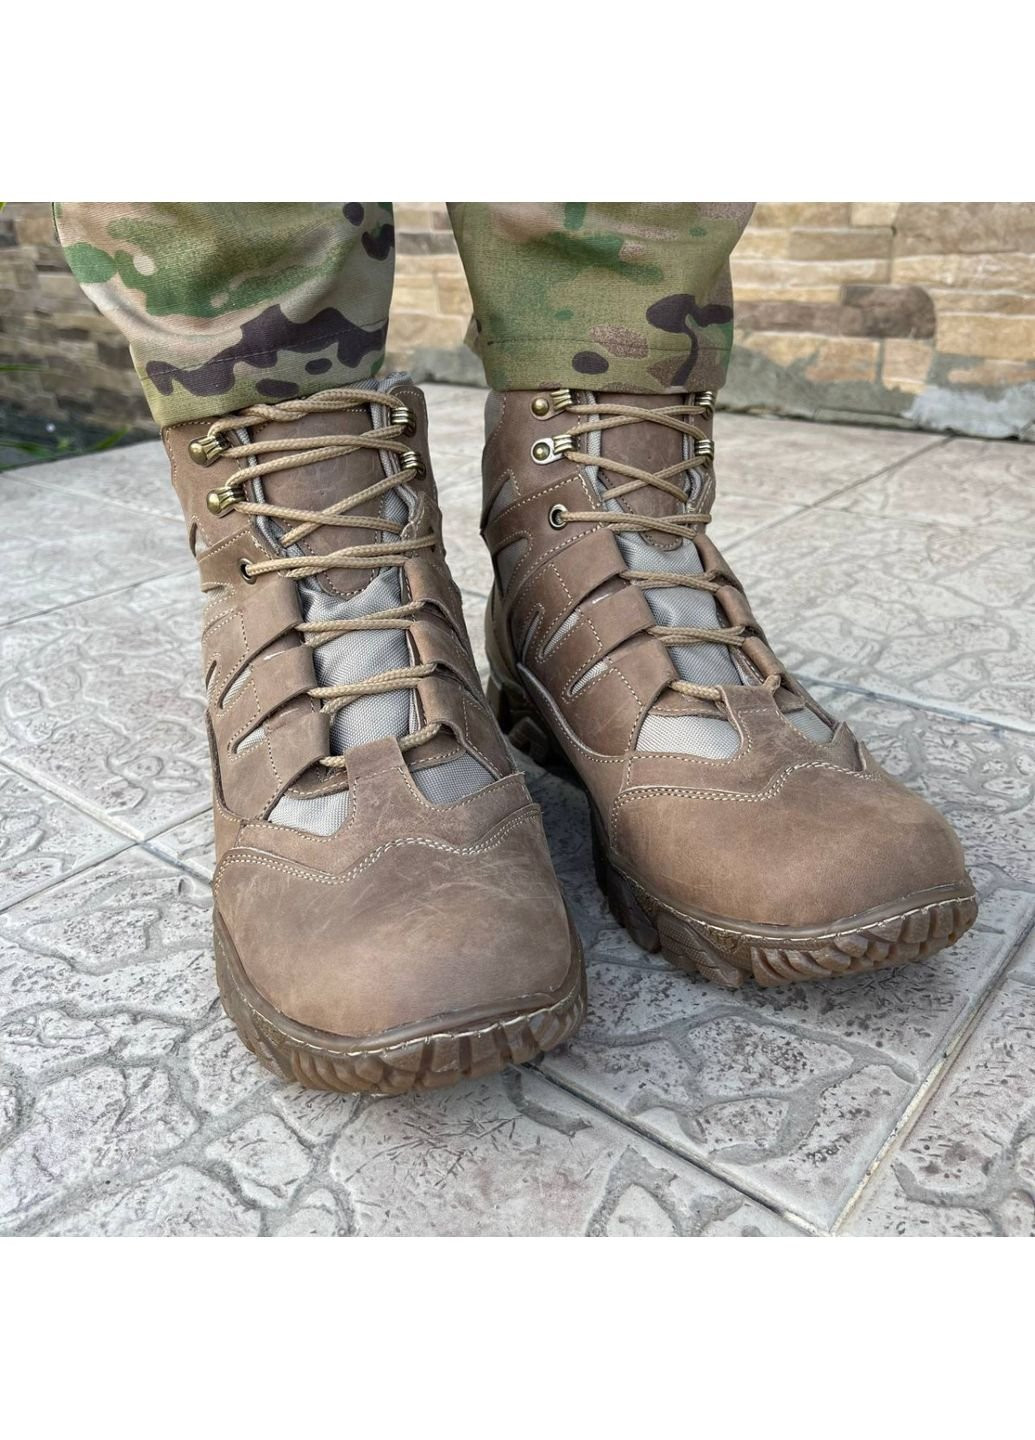 Коричневые осенние ботинки военные тактические всу (зсу) 7525 40 р 26 см коричневые KNF